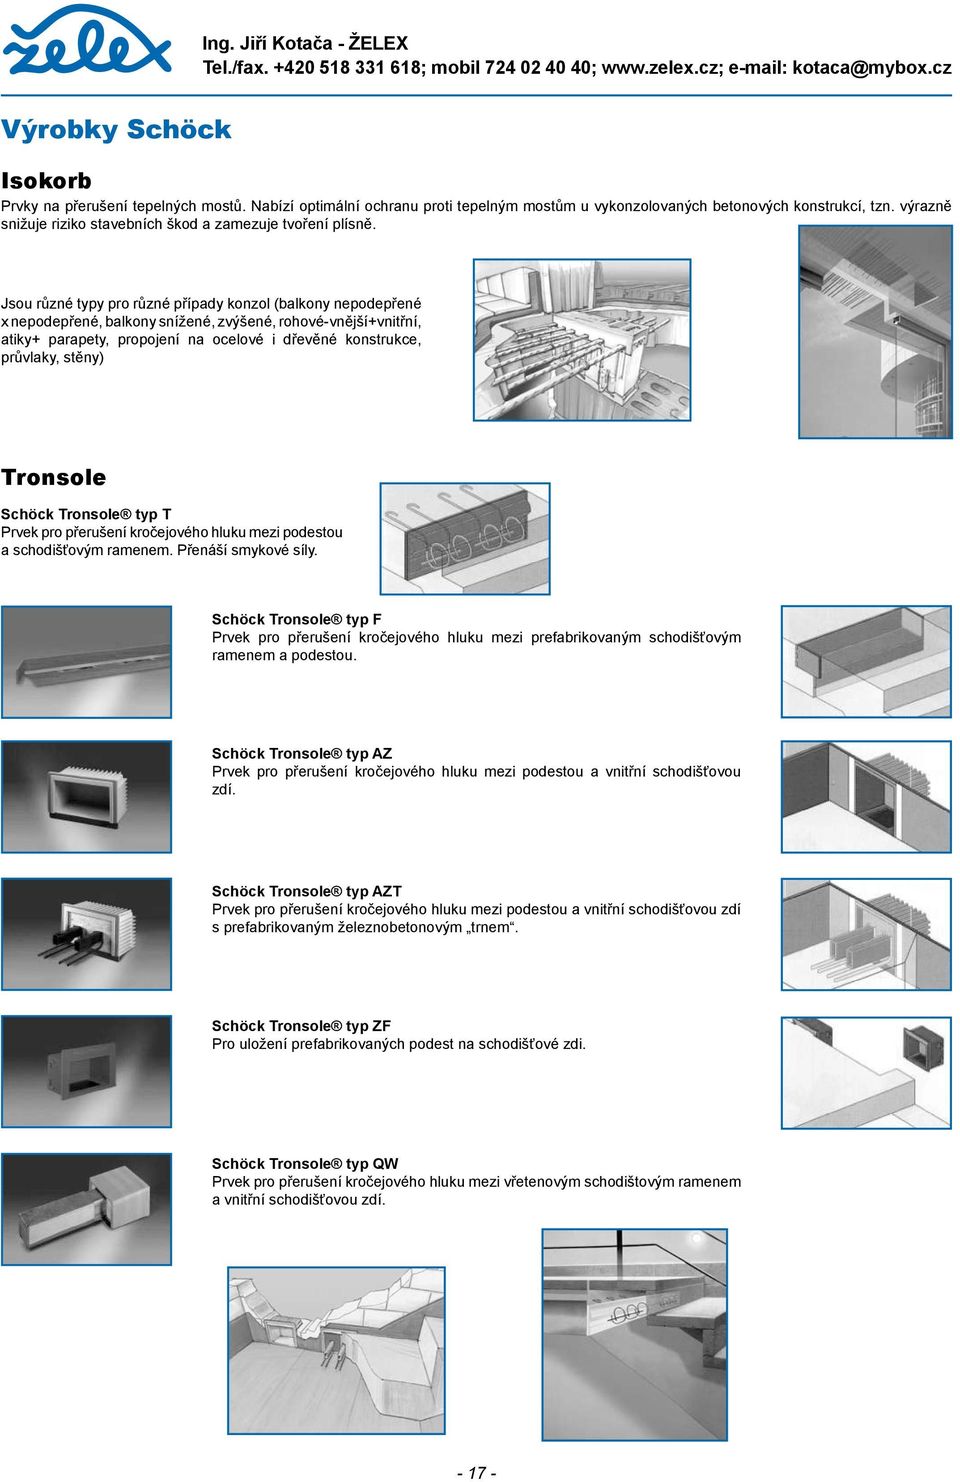 Jsou různé typy pro různé případy konzol (balkony nepodepřené x nepodepřené, balkony snížené, zvýšené, rohové-vnější+vnitřní, atiky+ parapety, propojení na ocelové i dřevěné konstrukce, průvlaky,